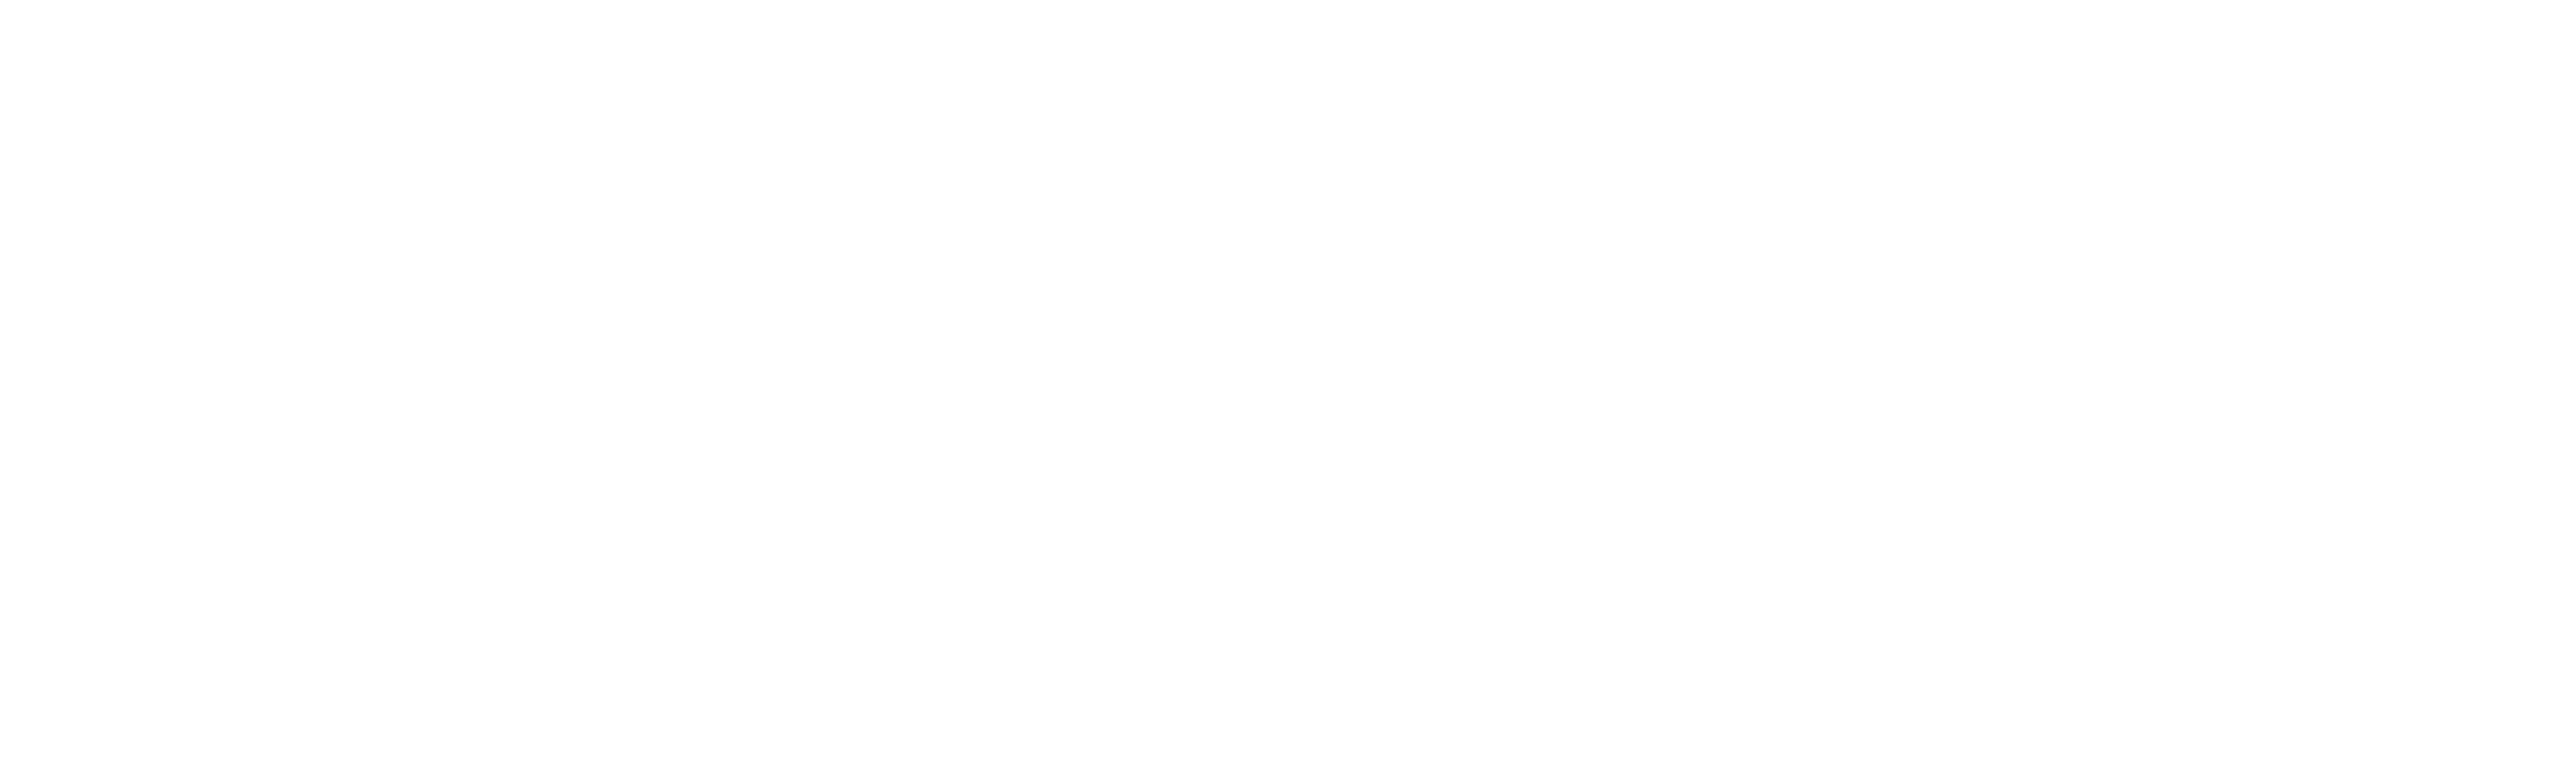 Metron-logo-blanc-1